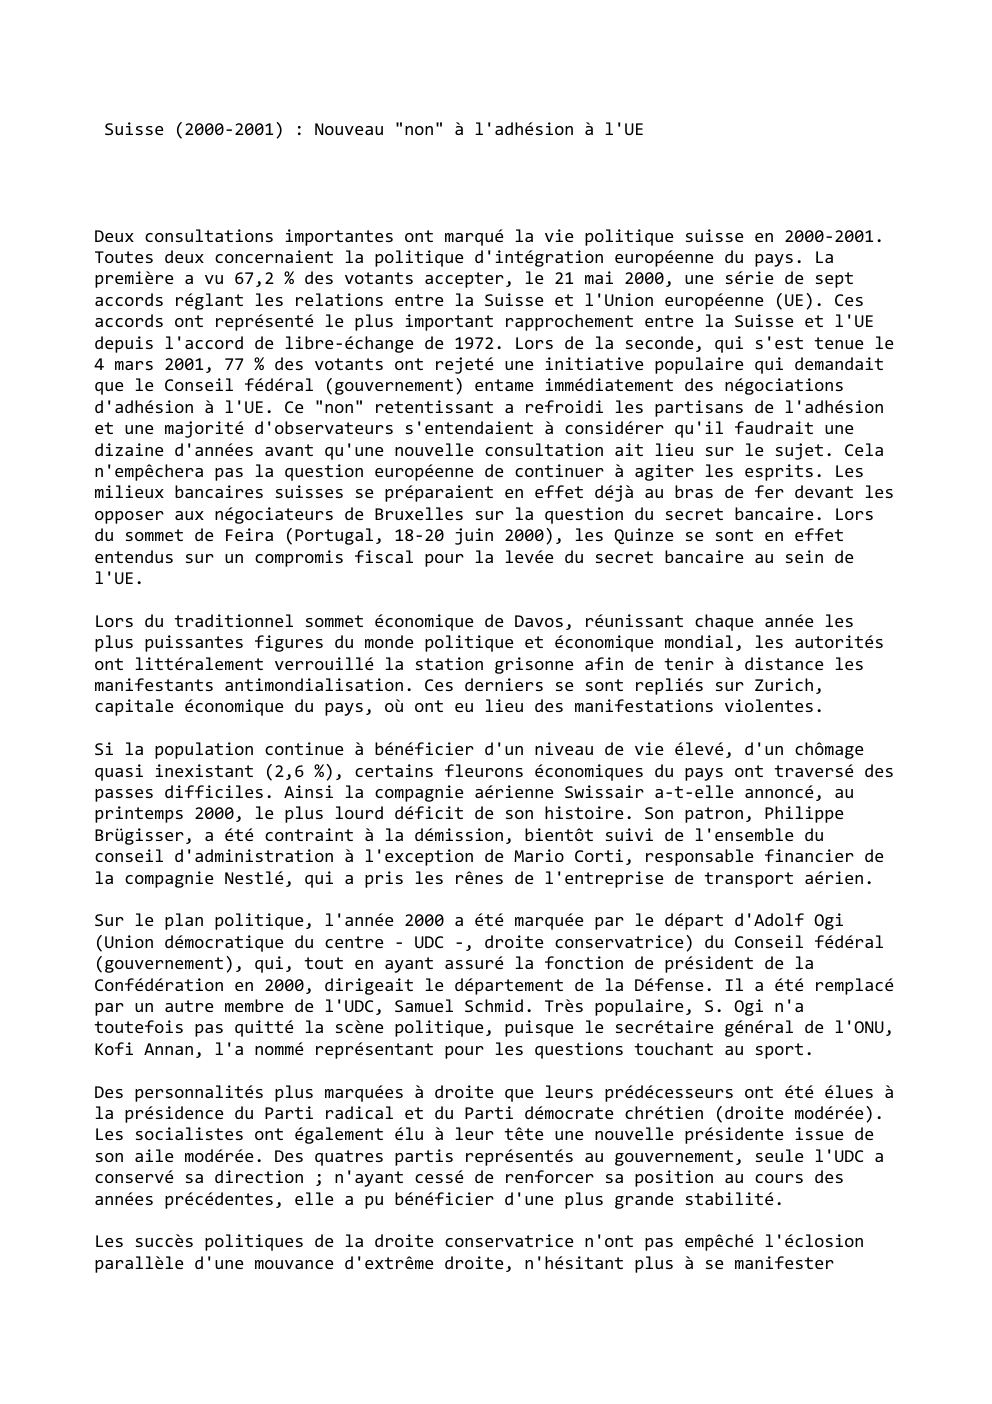 Prévisualisation du document Suisse (2000-2001) : Nouveau "non" à l'adhésion à l'UE

Deux consultations importantes ont marqué la vie politique suisse en 2000-2001....